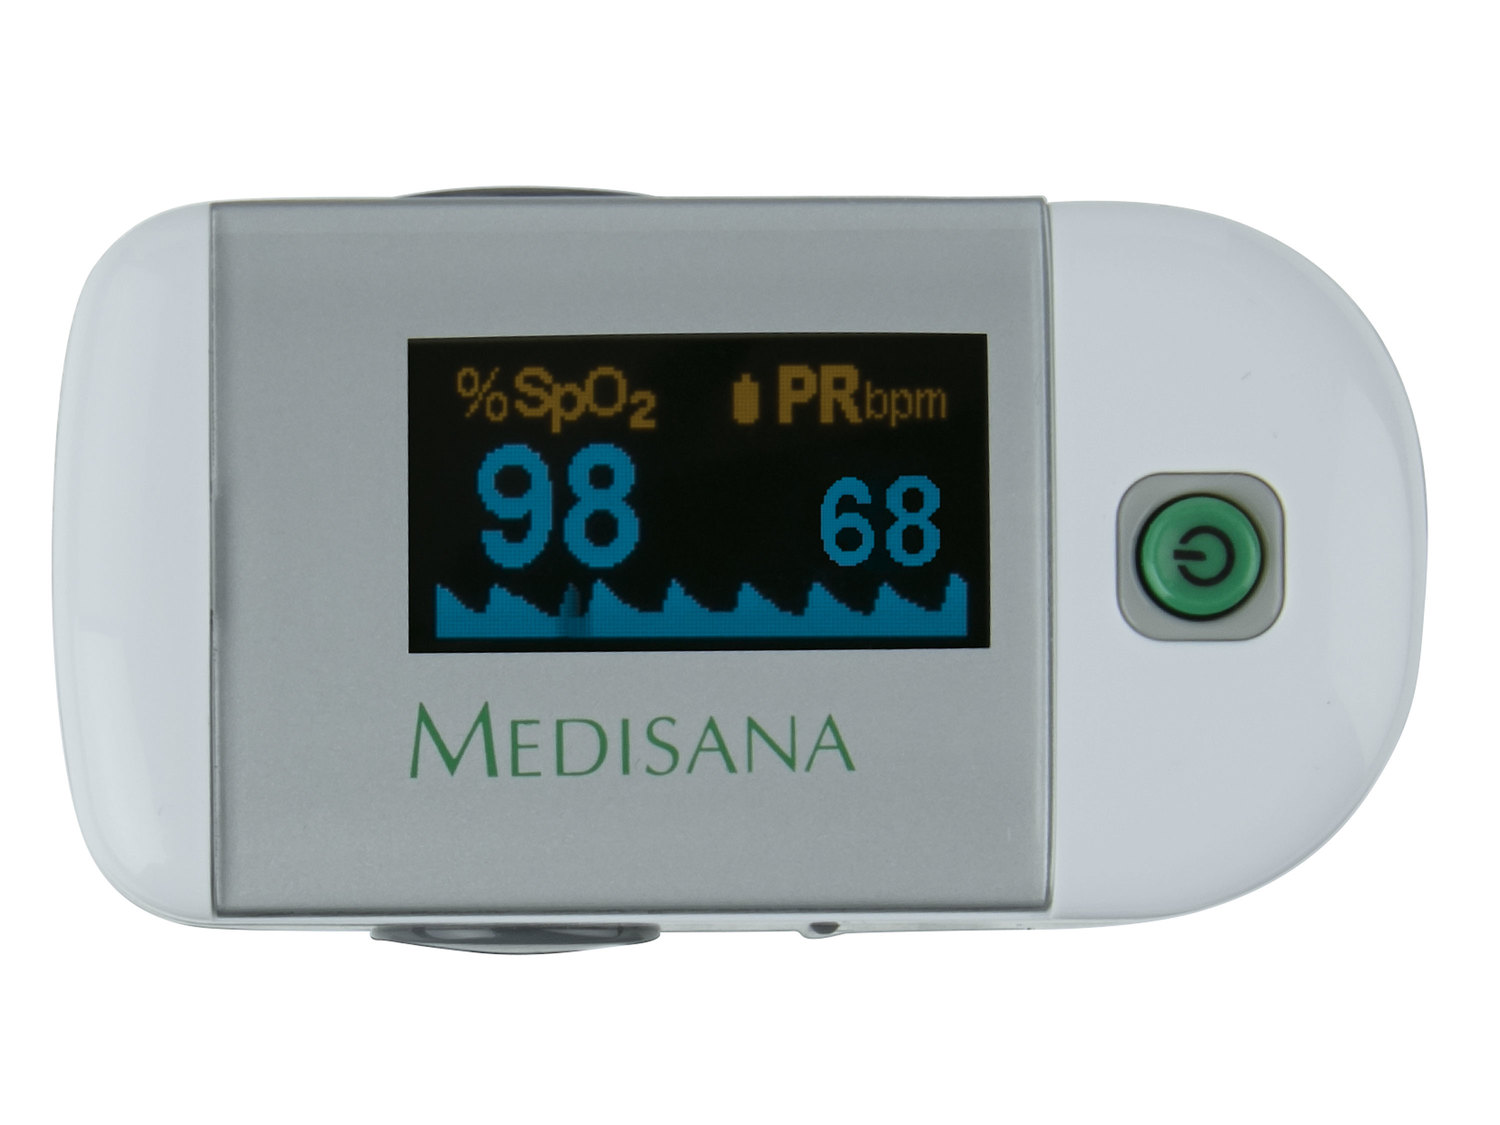 Pulsoksymetr Medisana, cena 89,90 PLN 
- wyrób medyczny urządzenie elektroniczne ...